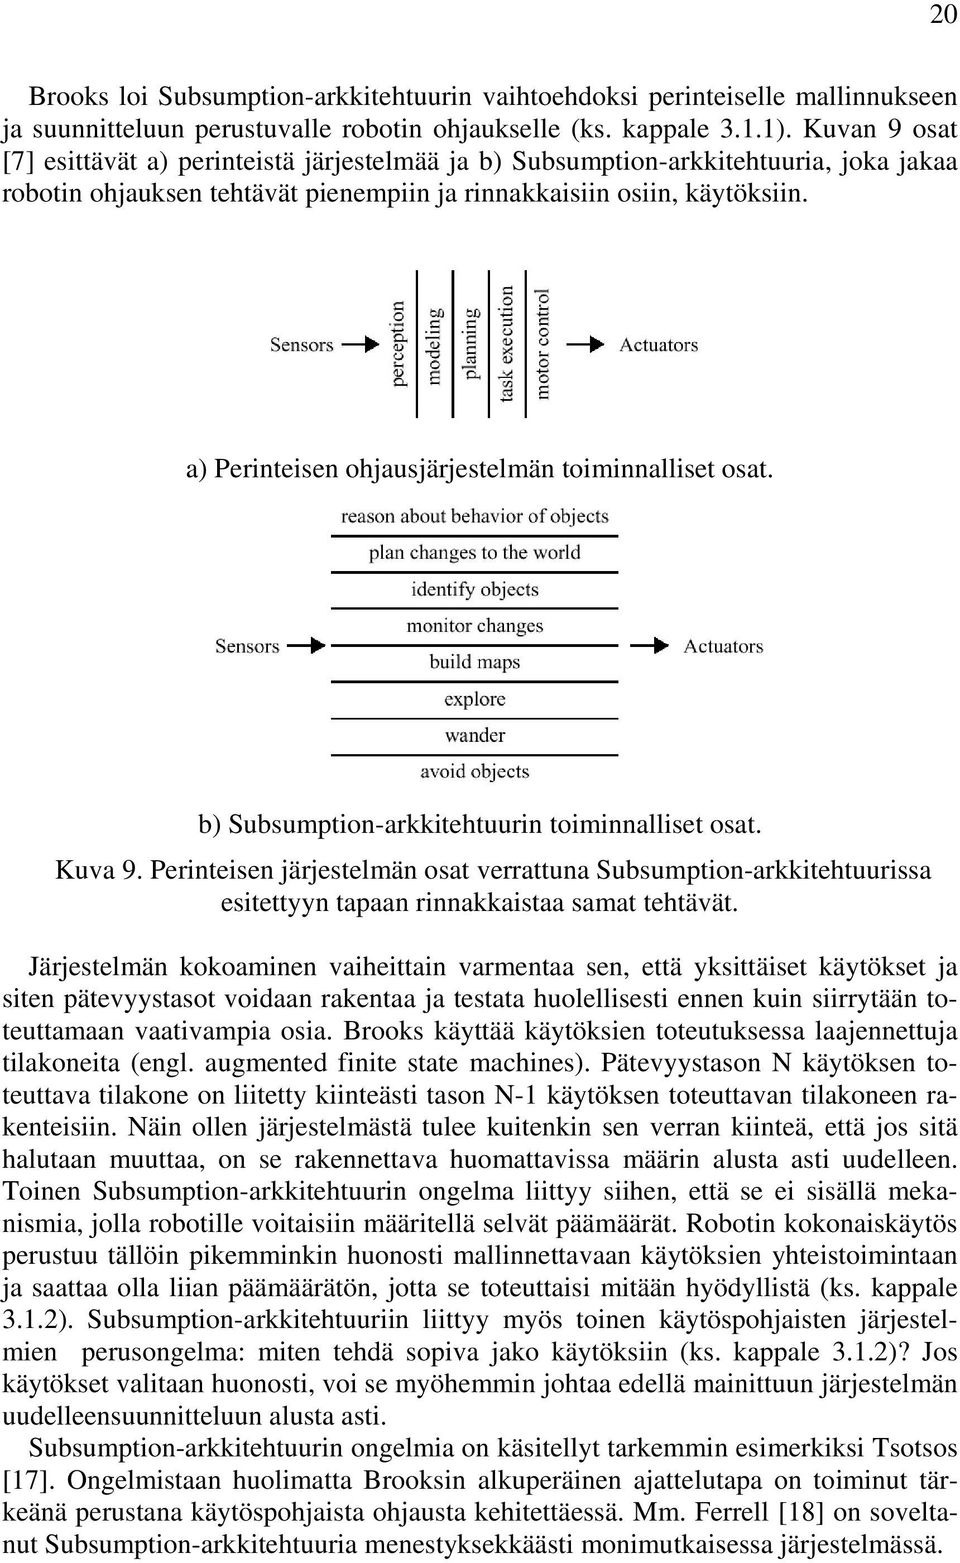 a) Perinteisen ohjausjärjestelmän toiminnalliset osat. b) Subsumption-arkkitehtuurin toiminnalliset osat. Kuva 9.